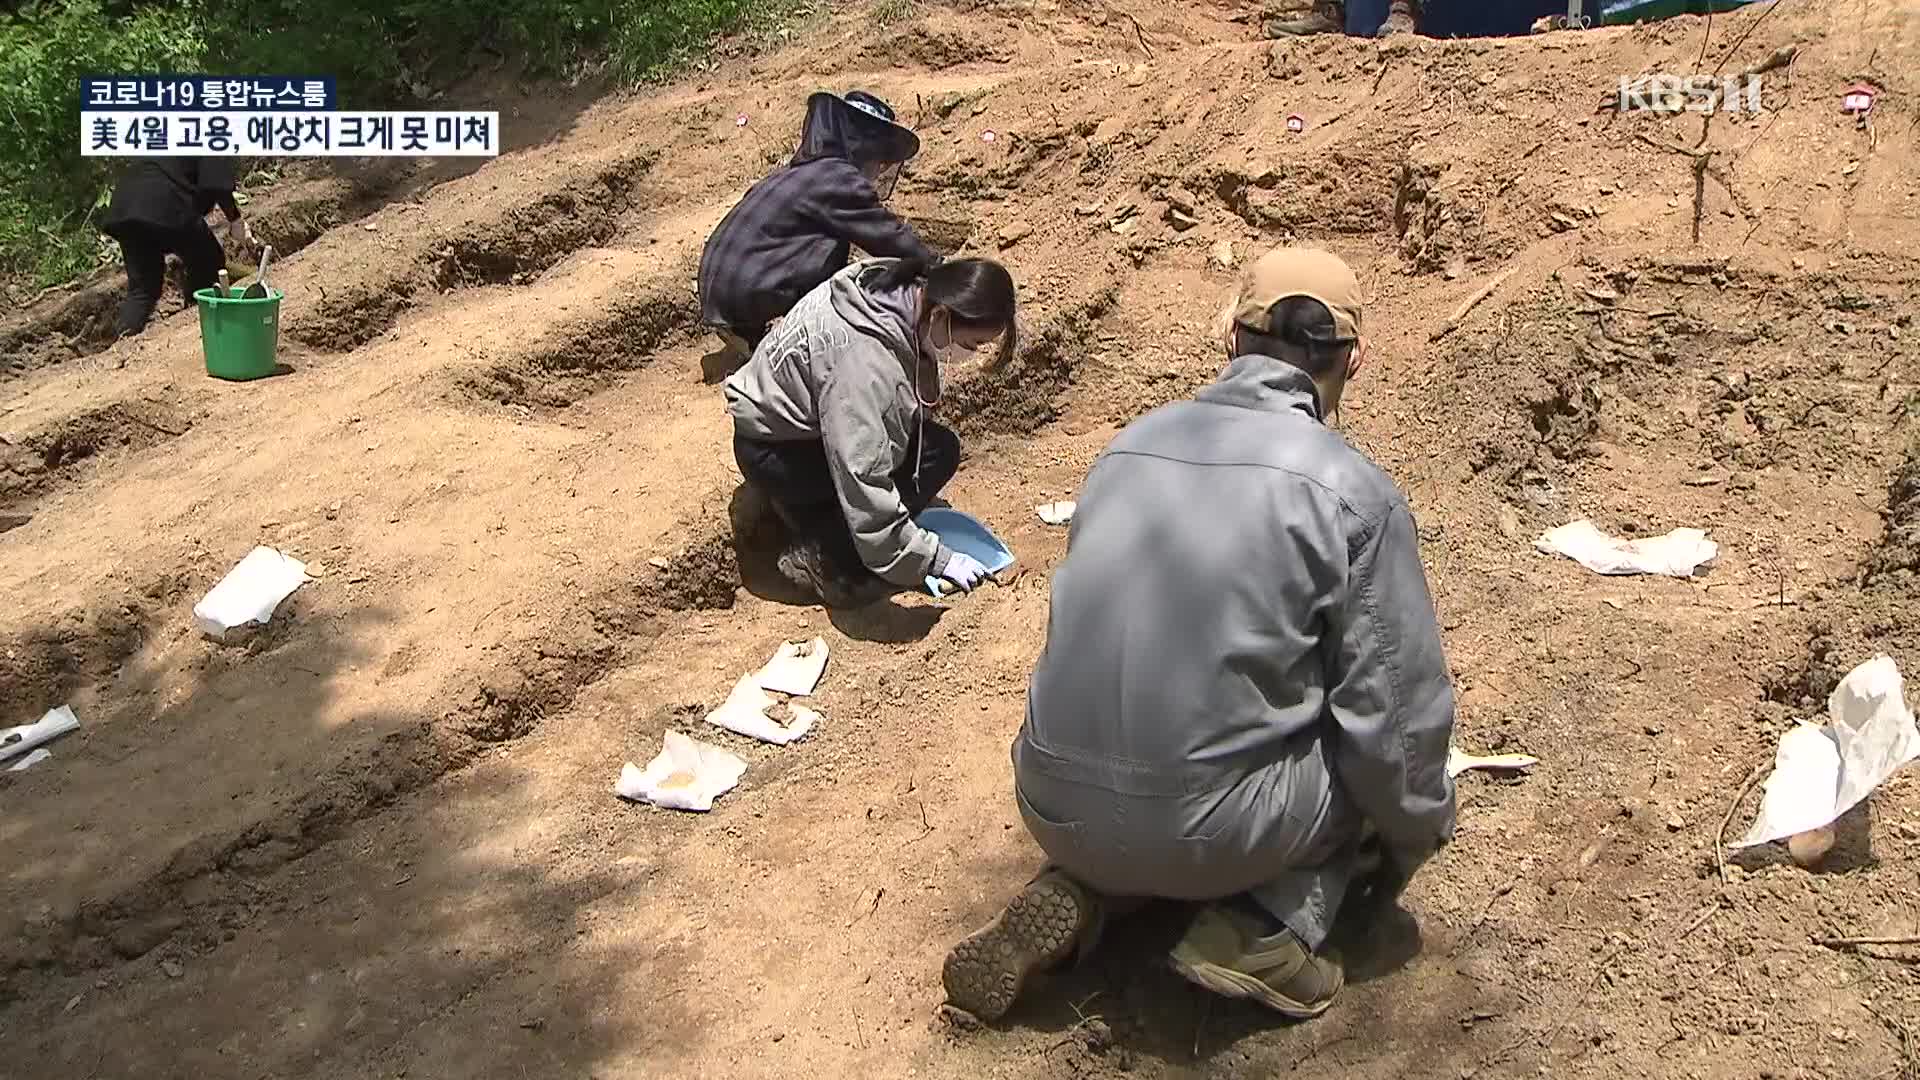 진주 화령골, 71년 만의 유해발굴…“정부가 더 관심을”